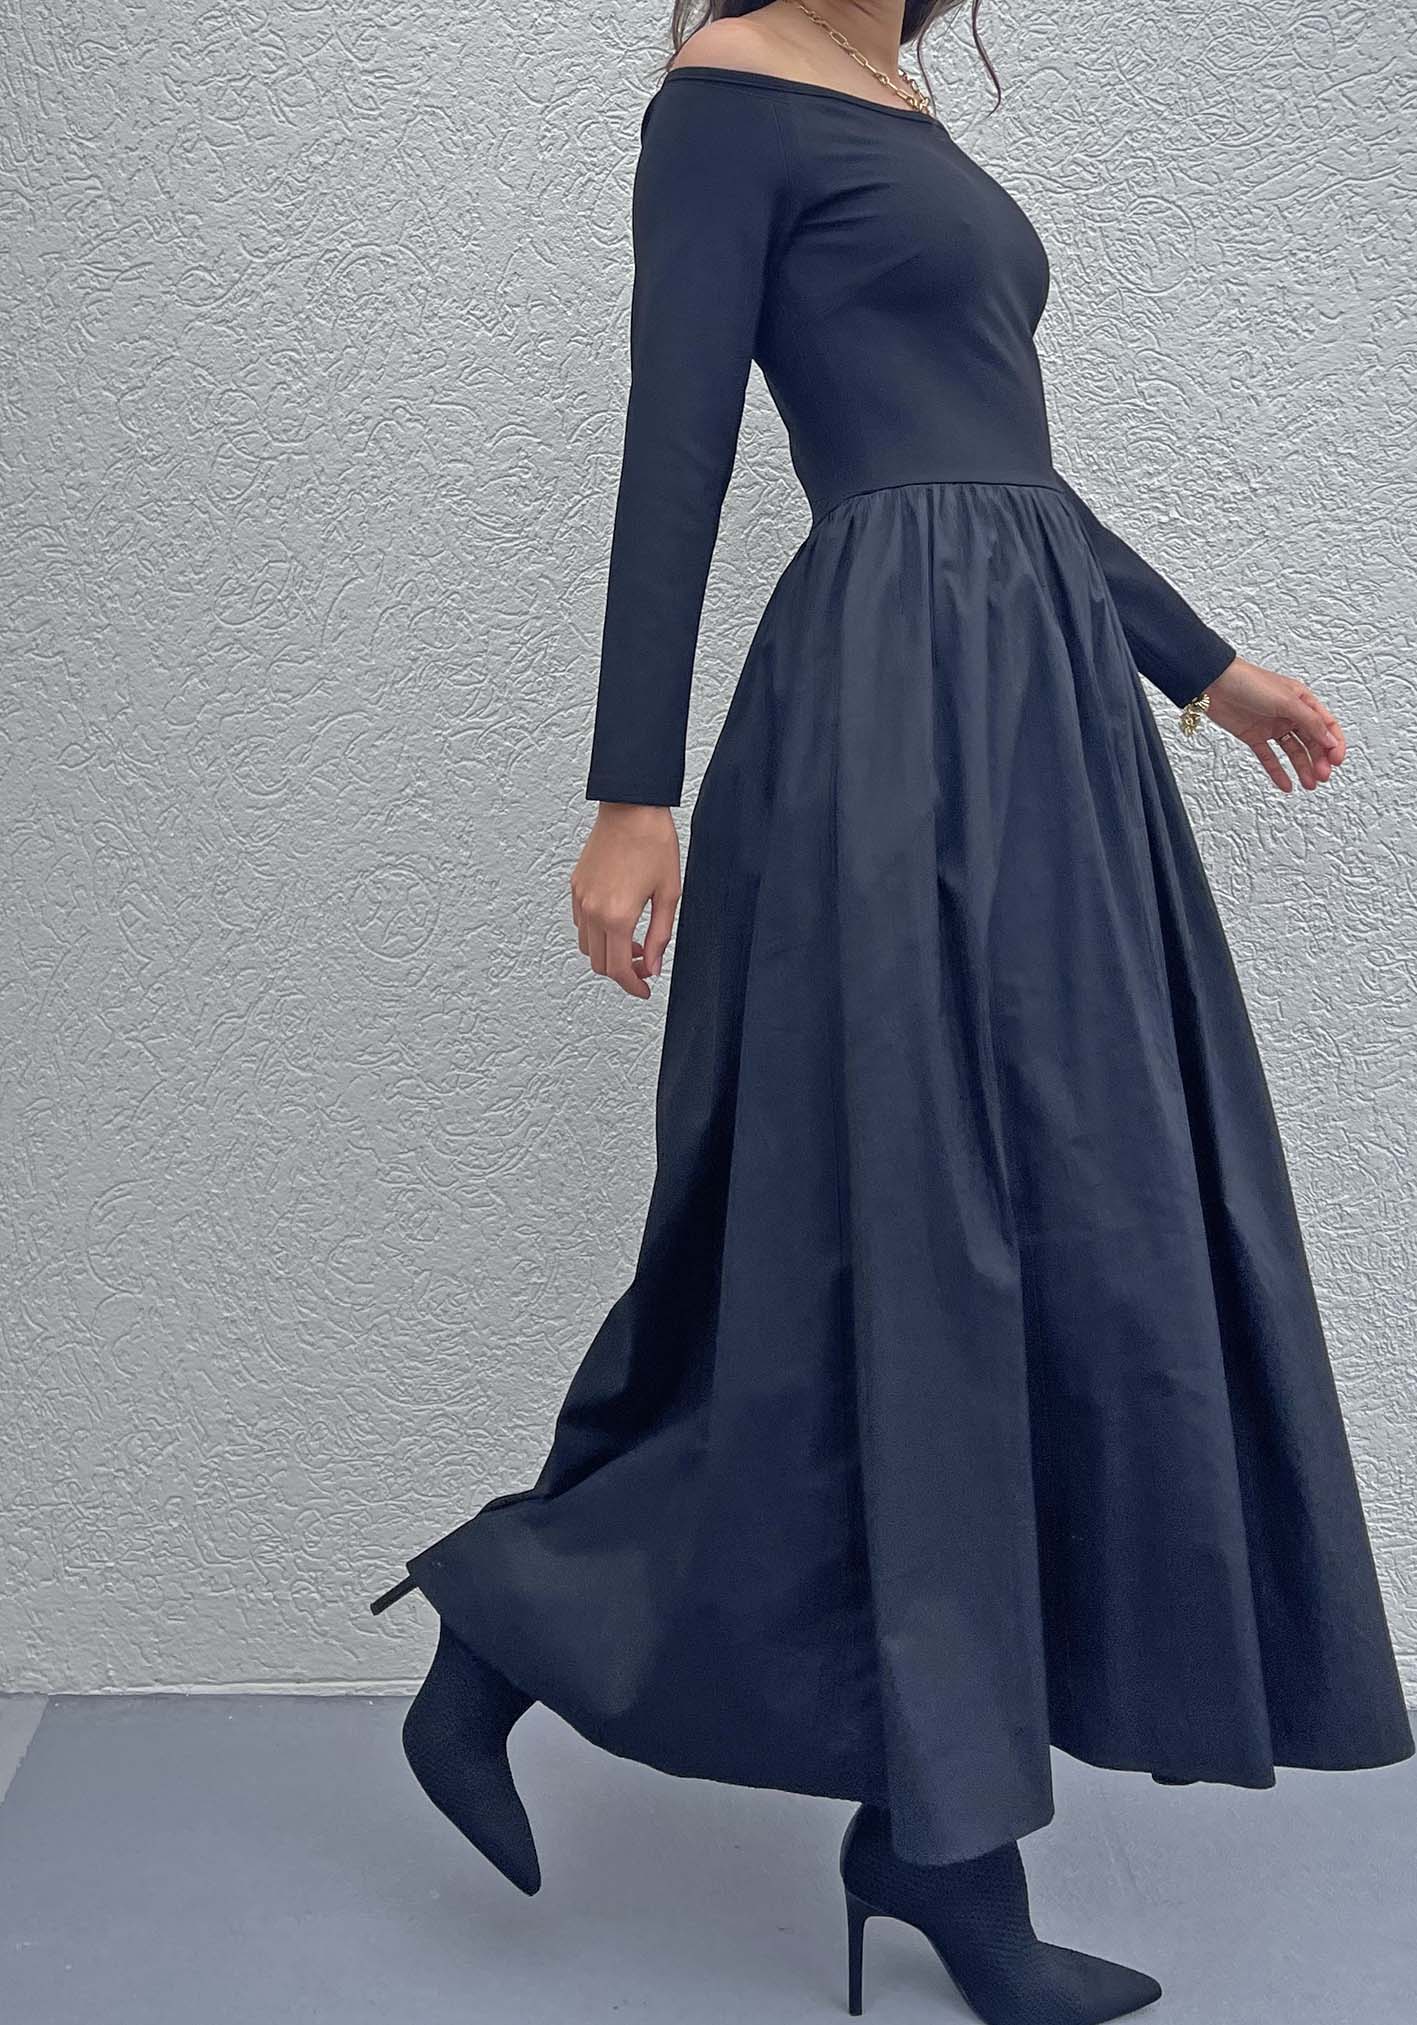 Fifth Avenue Black Maxi Dress